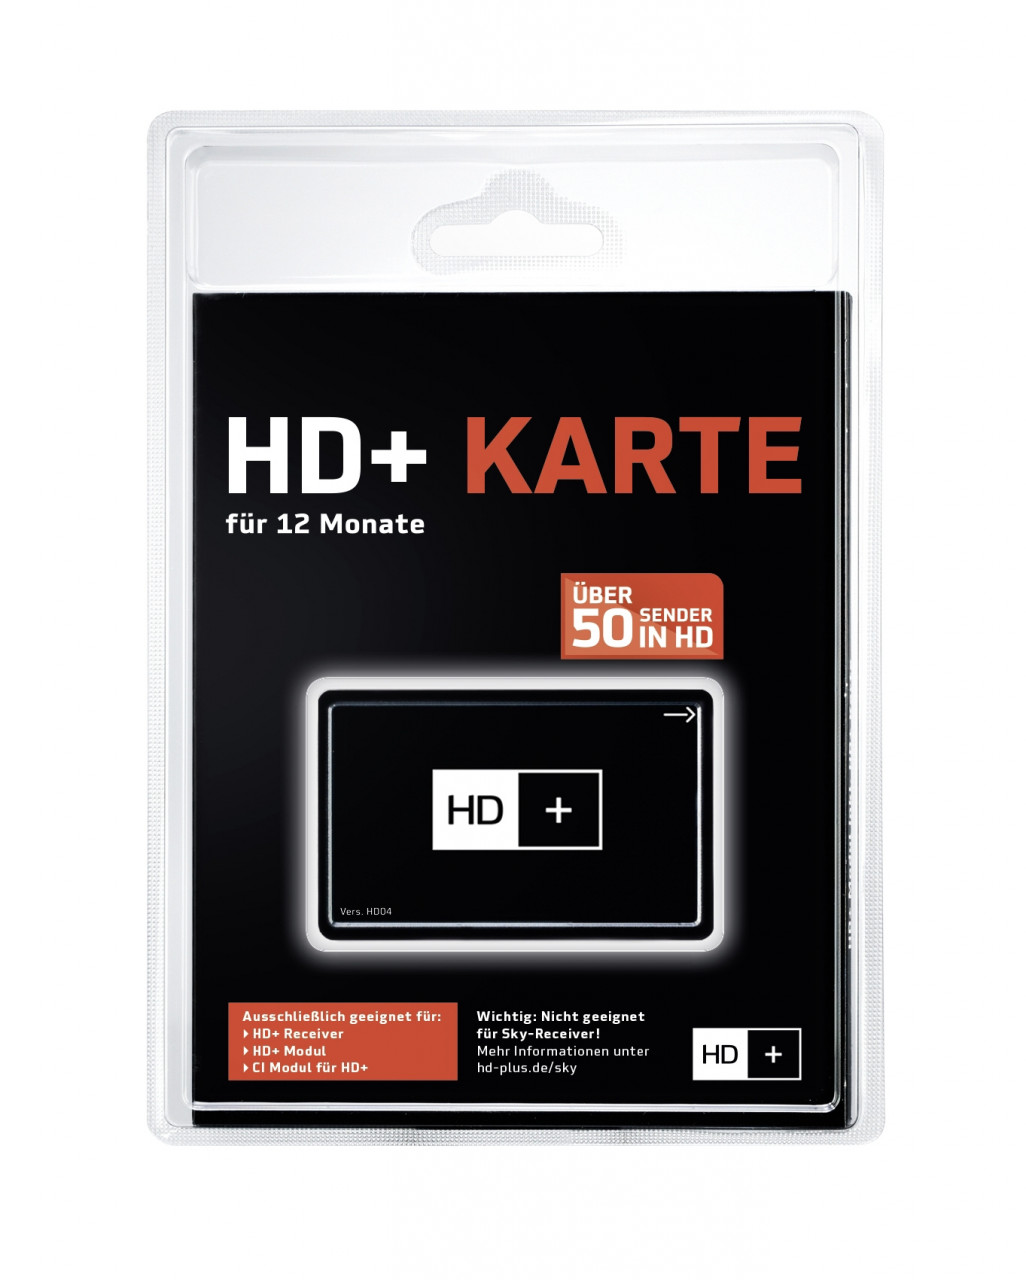 HD PLUS Karte für 12 Monate geeignet für HD und UHD, für Satellitenempfang